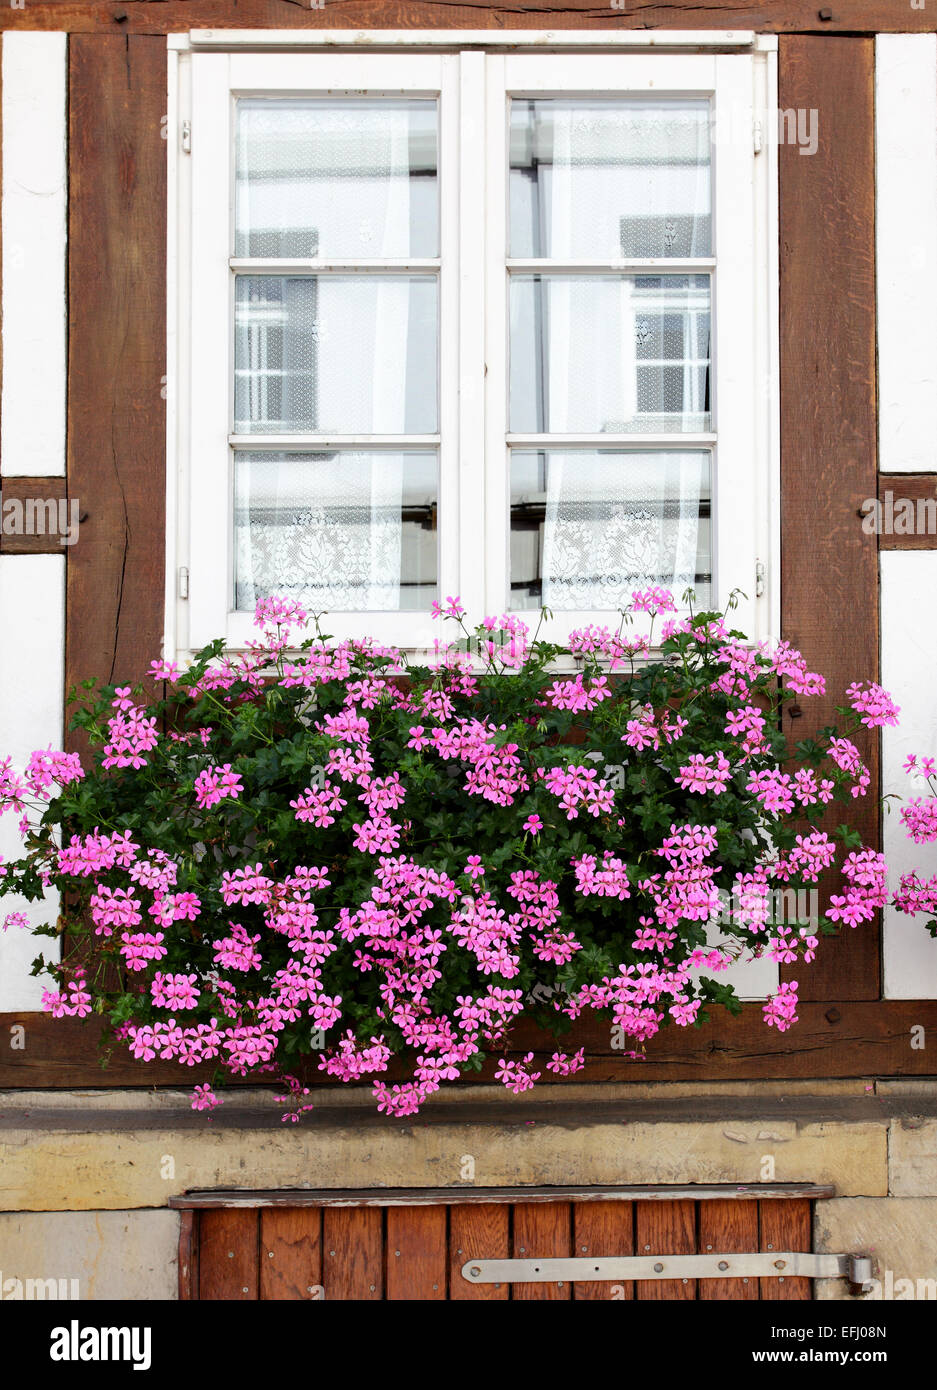 Maison ancienne de Windows avec des fleurs, Allemagne Banque D'Images